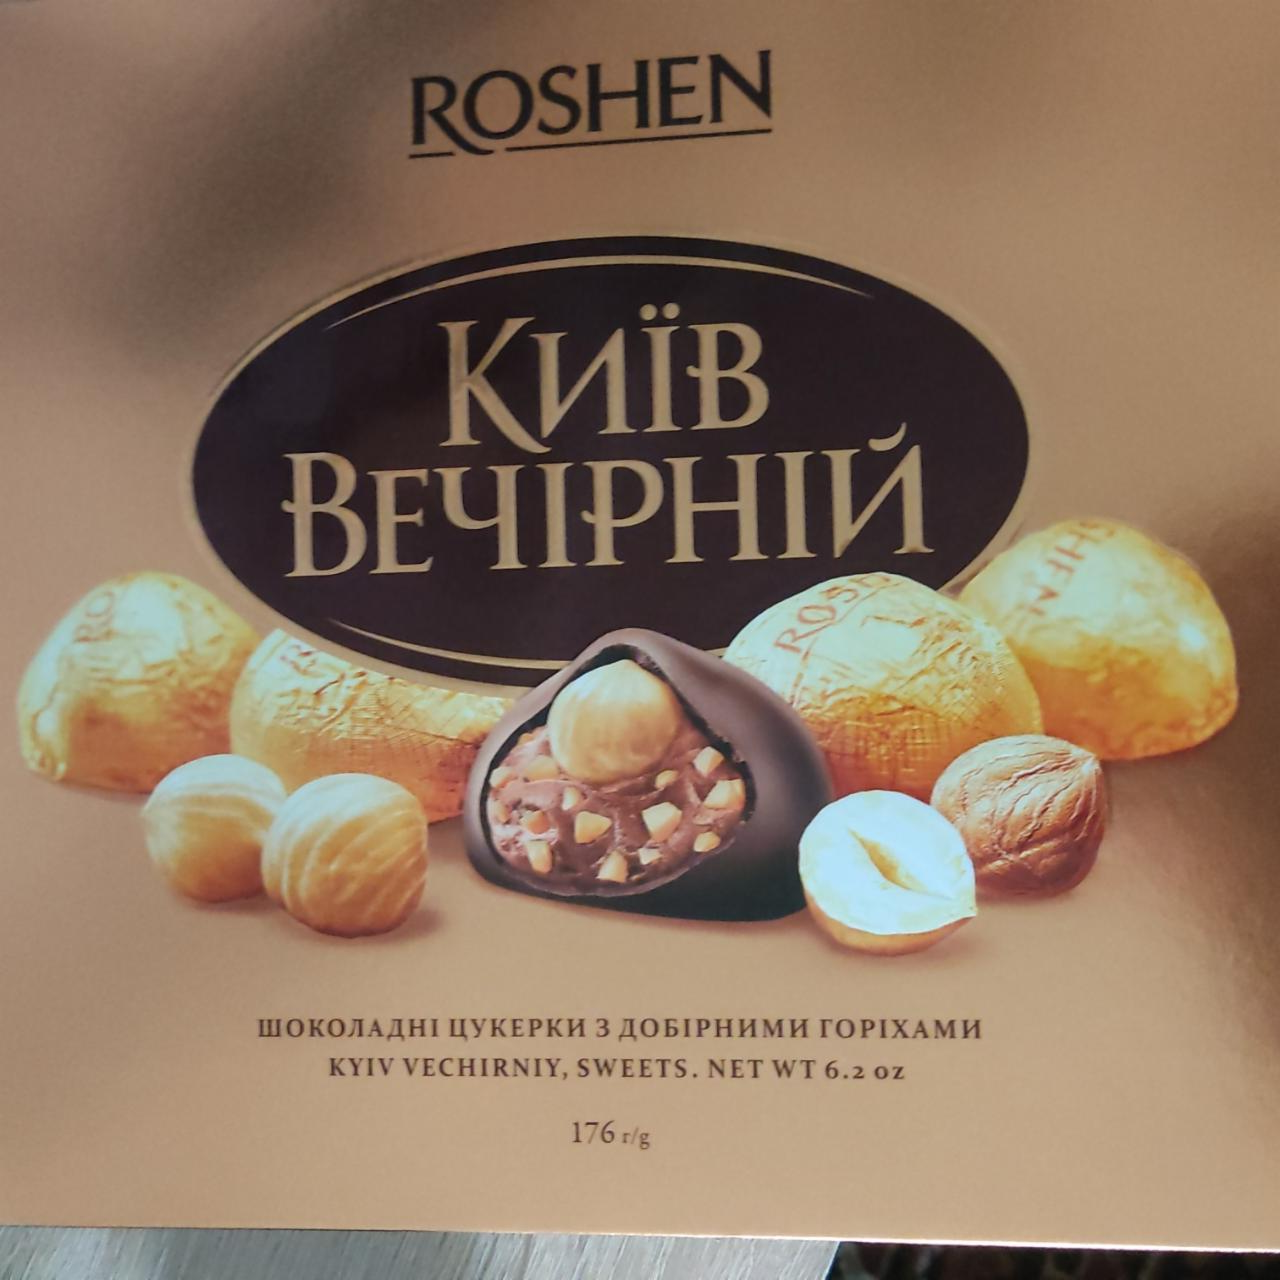 Фото - Цукерки шоколадні з добірними горіхами глазуровані Київ Вечірній Roshen